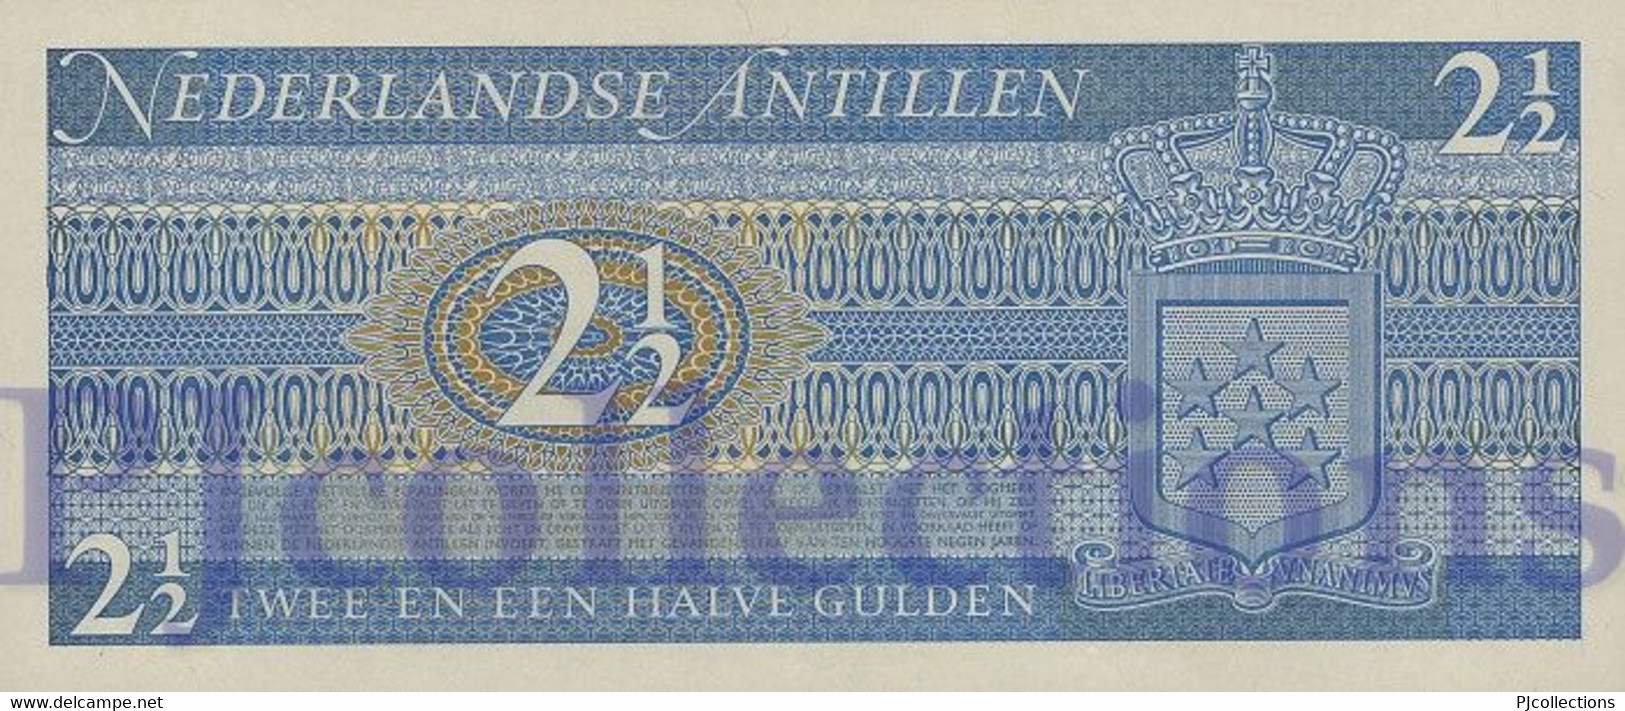 LOT NETHERLANDS ANTILLES 2,5 GULDEN 1970 PICK 21a UNC X 3 PCS - Antilles Néerlandaises (...-1986)